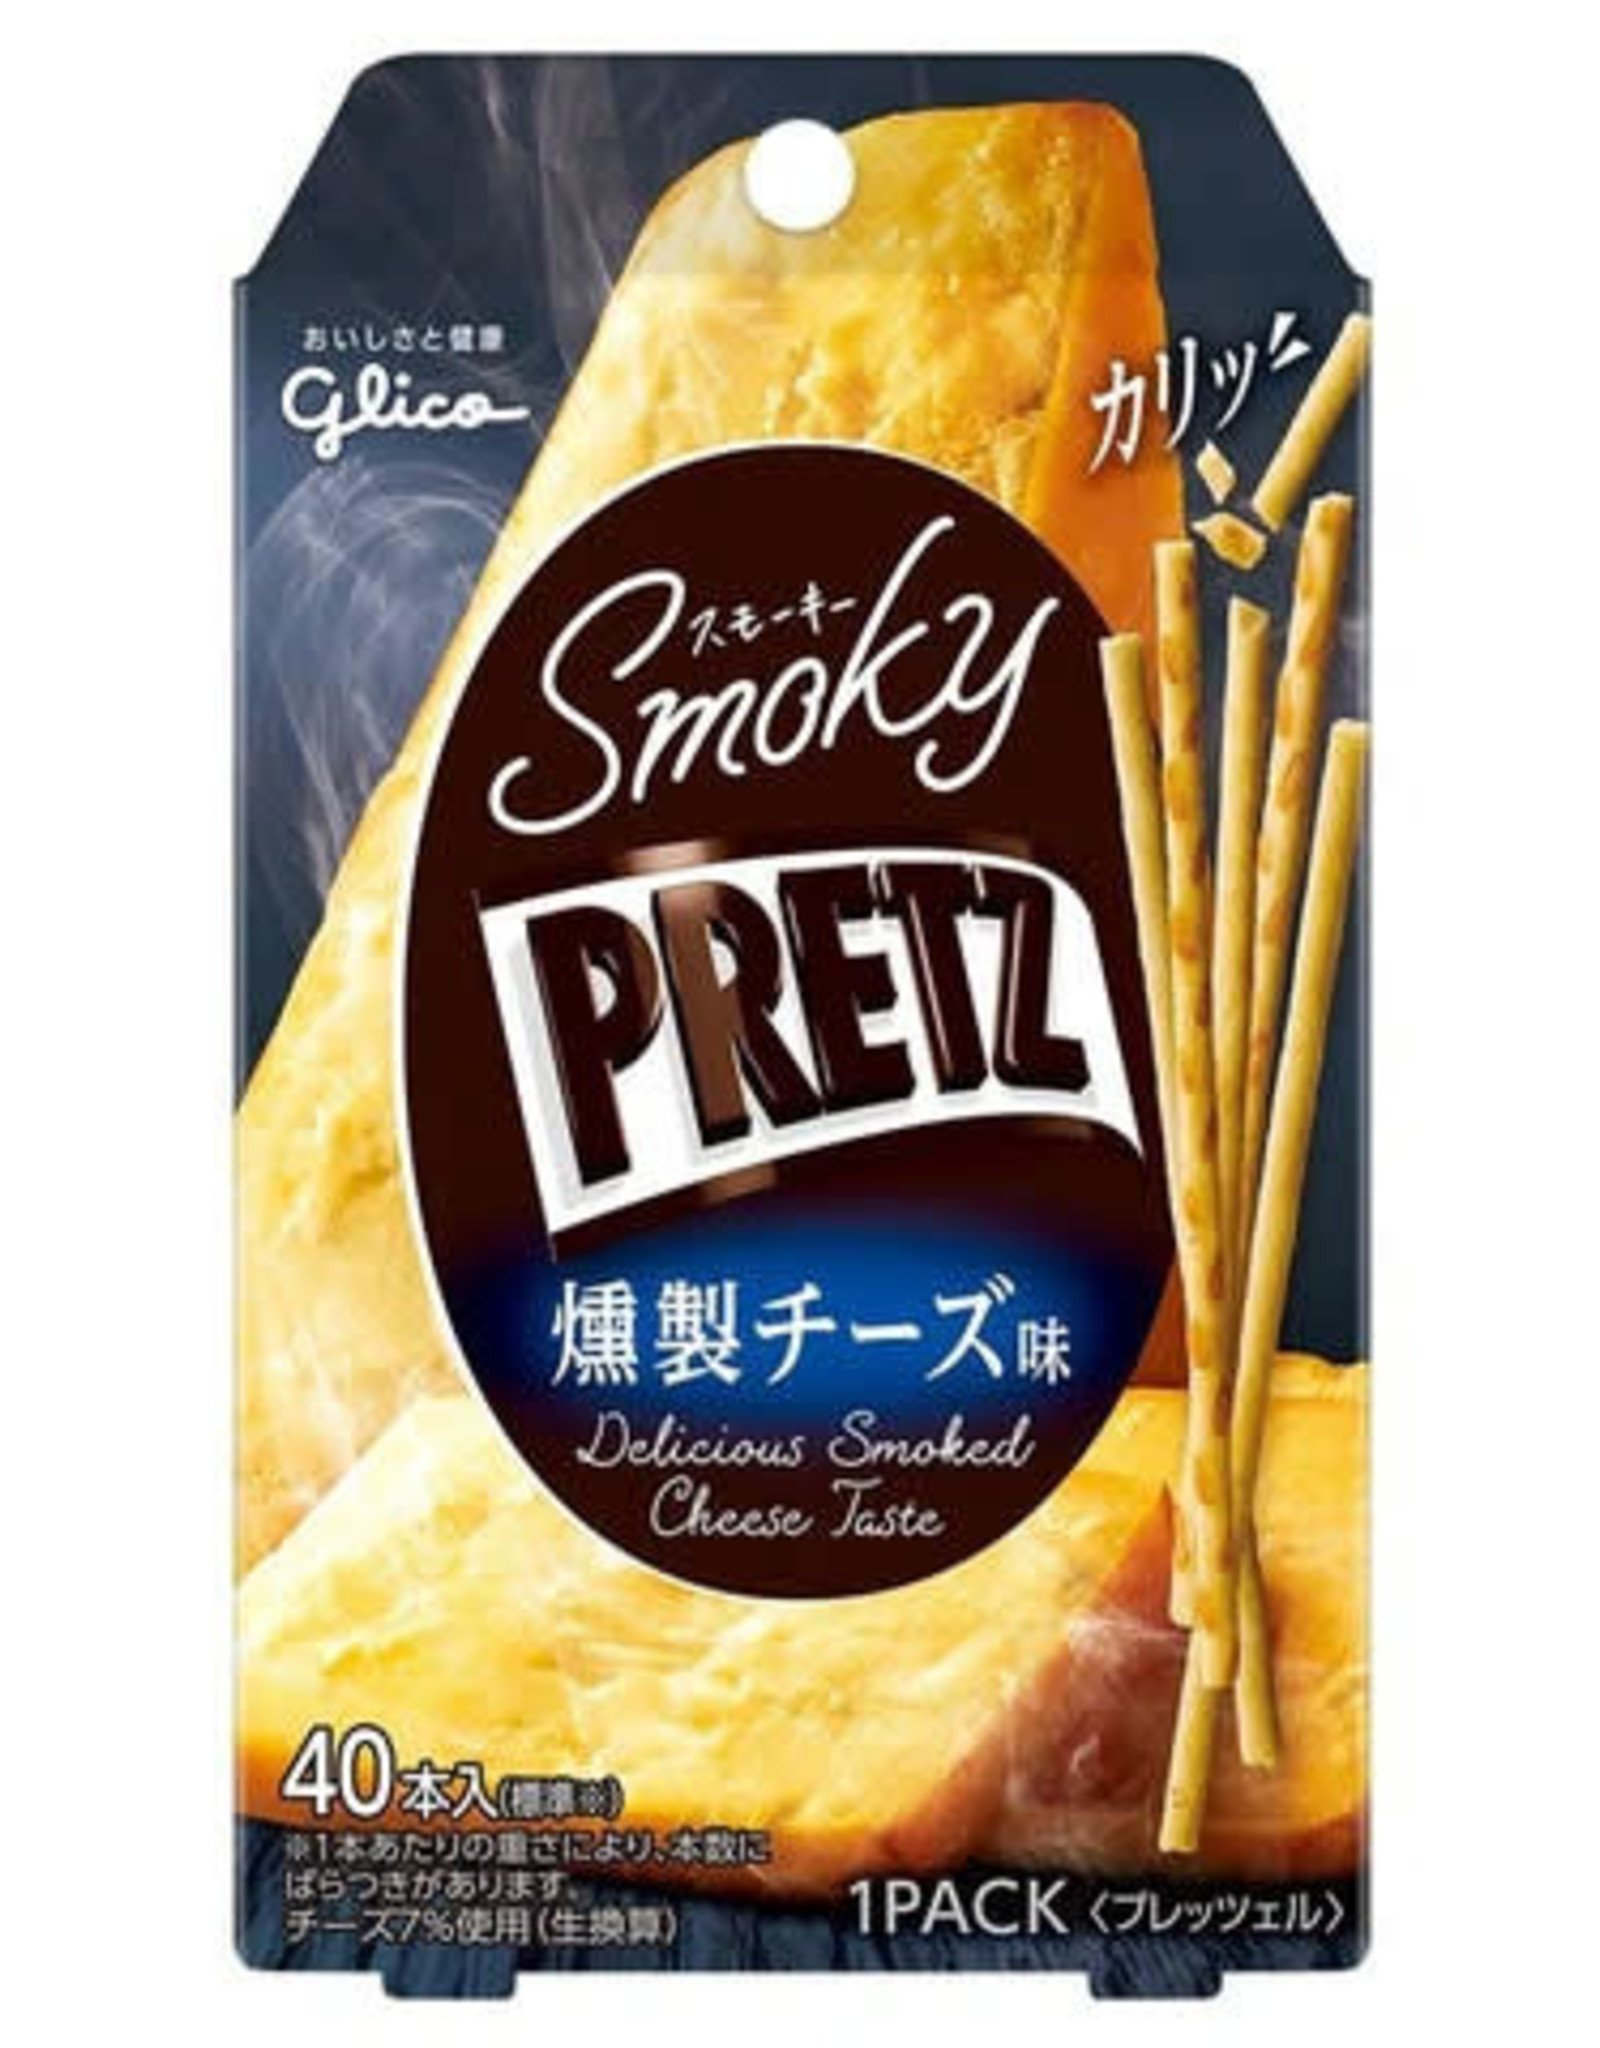 Pretz - Smoky Pretz - Delicious Smoked Cheese Taste - 24g